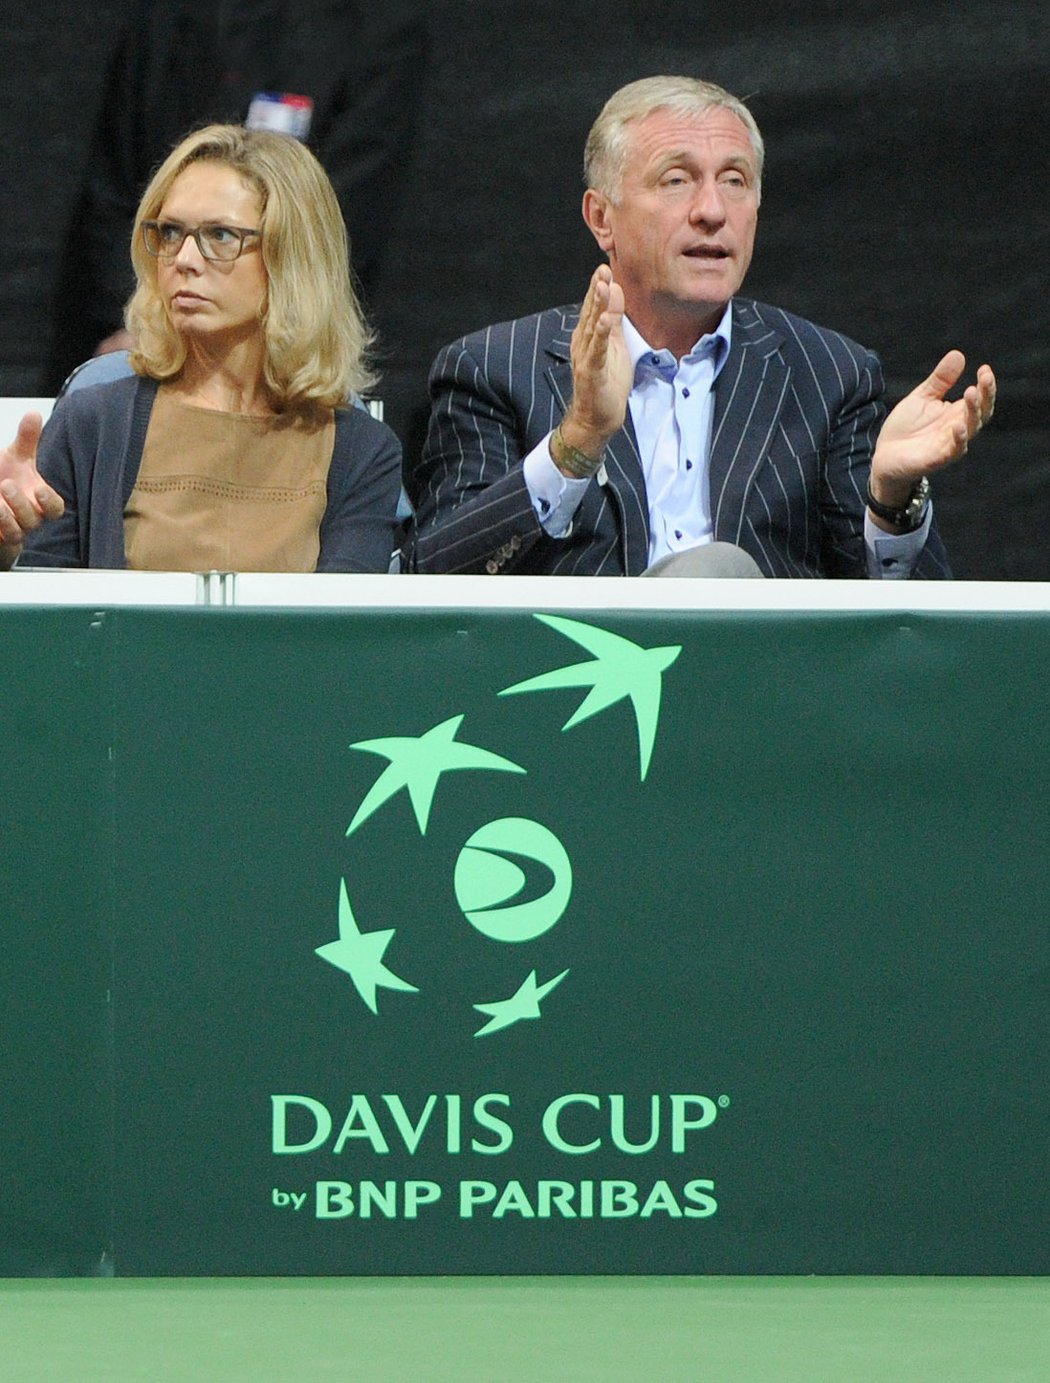 Daviscupové semifinále sledoval také bývalý premiér Mirek Topolánek s manželkou